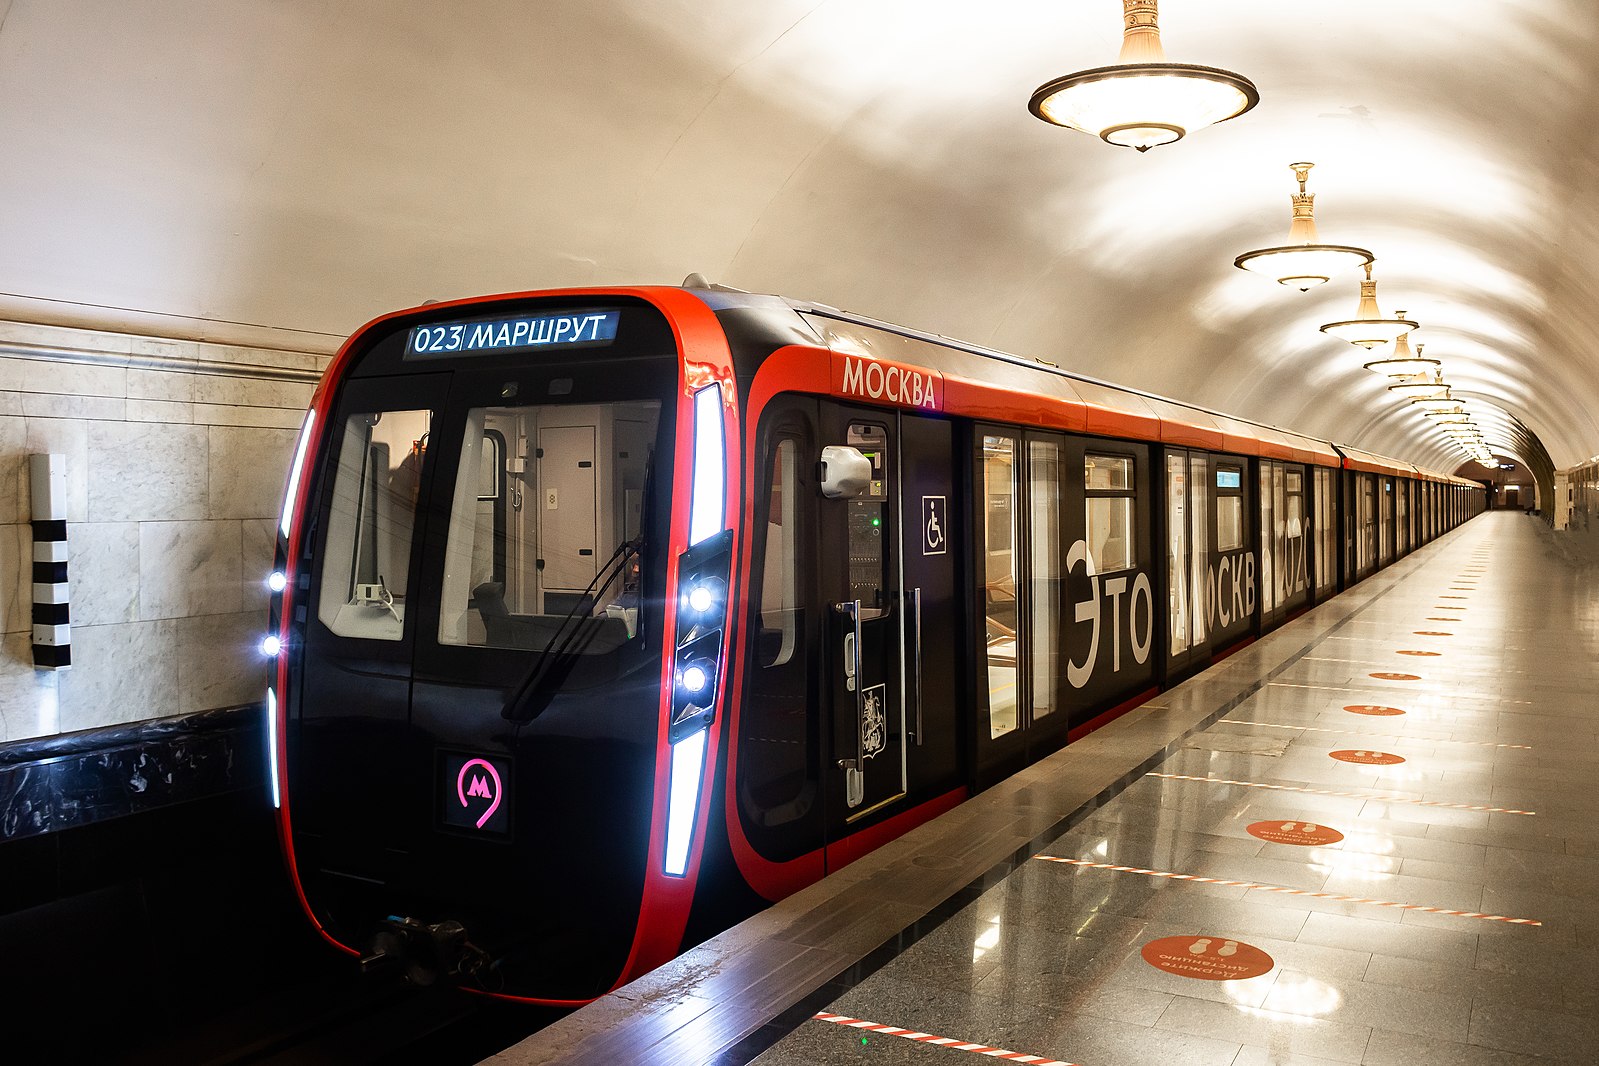 метро на 2020 год